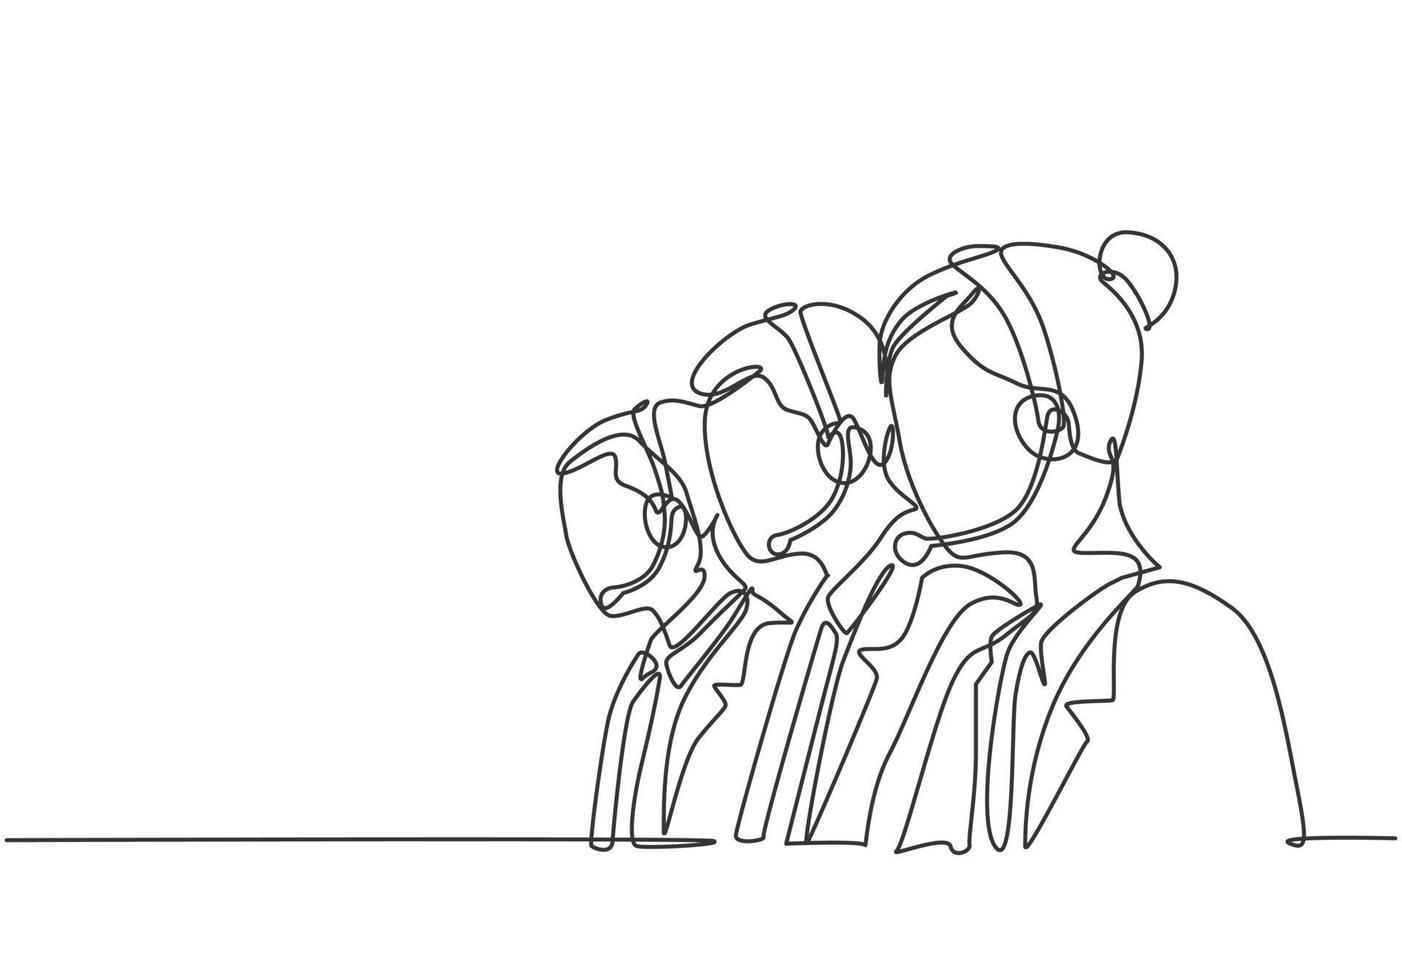 eine kontinuierliche Linie, die eine Gruppe von männlichen und weiblichen Telemarketing-Teammitgliedern zeichnet, die neue Kunden anruft, um ein neues Hausreinigungsprodukt anzubieten. Vertriebsmitarbeiter Konzept Single-Line-Draw-Design-Vektor-Illustration vektor